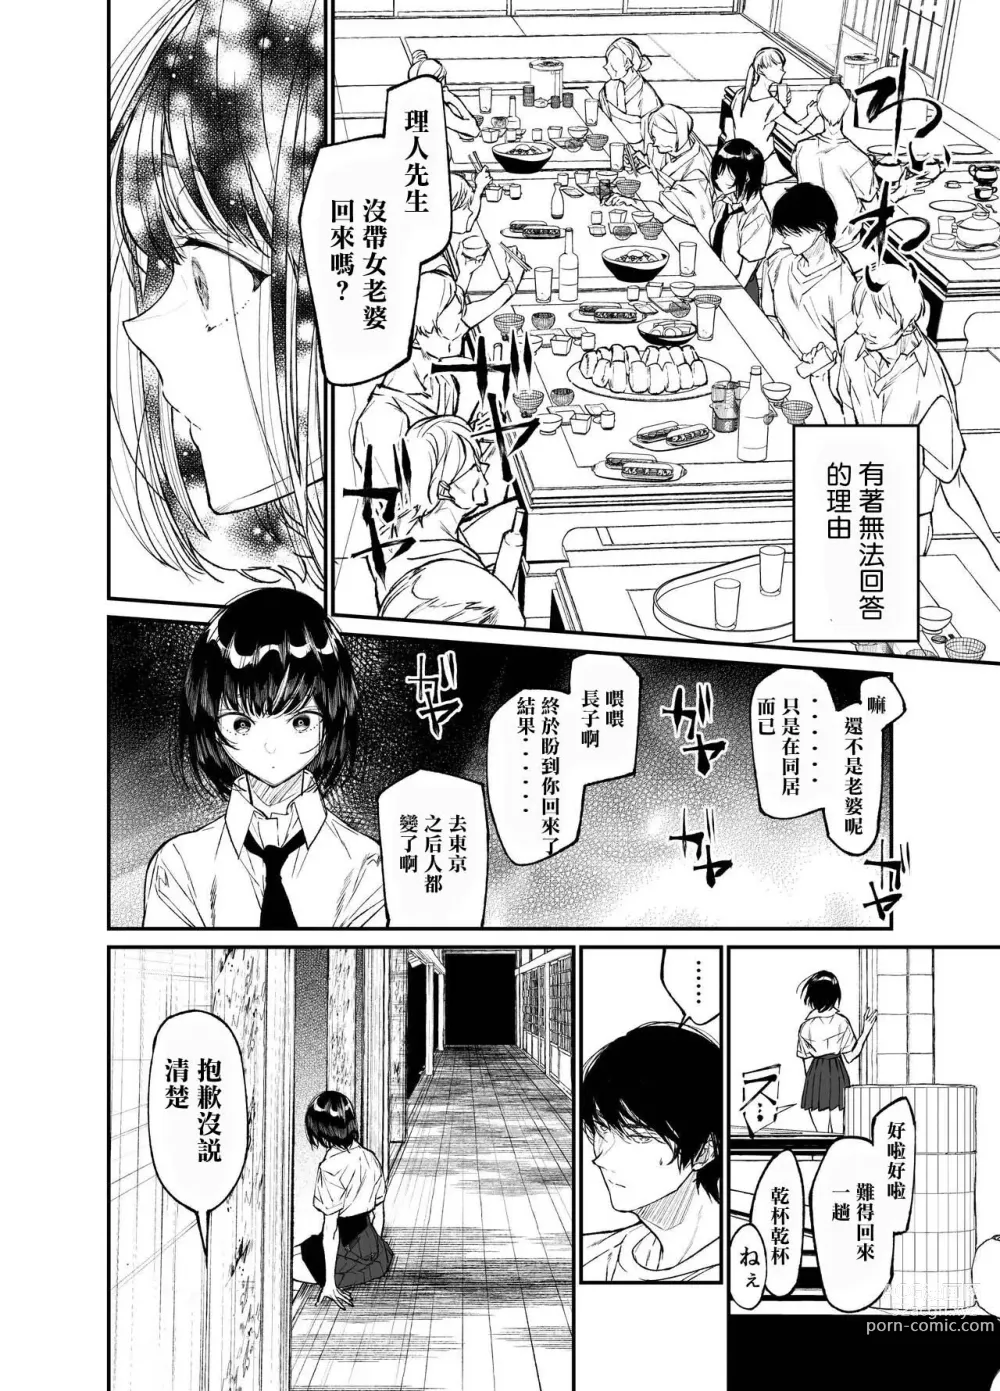 Page 8 of doujinshi Natsu, Shoujo wa Tonde, Hi ni Iru.